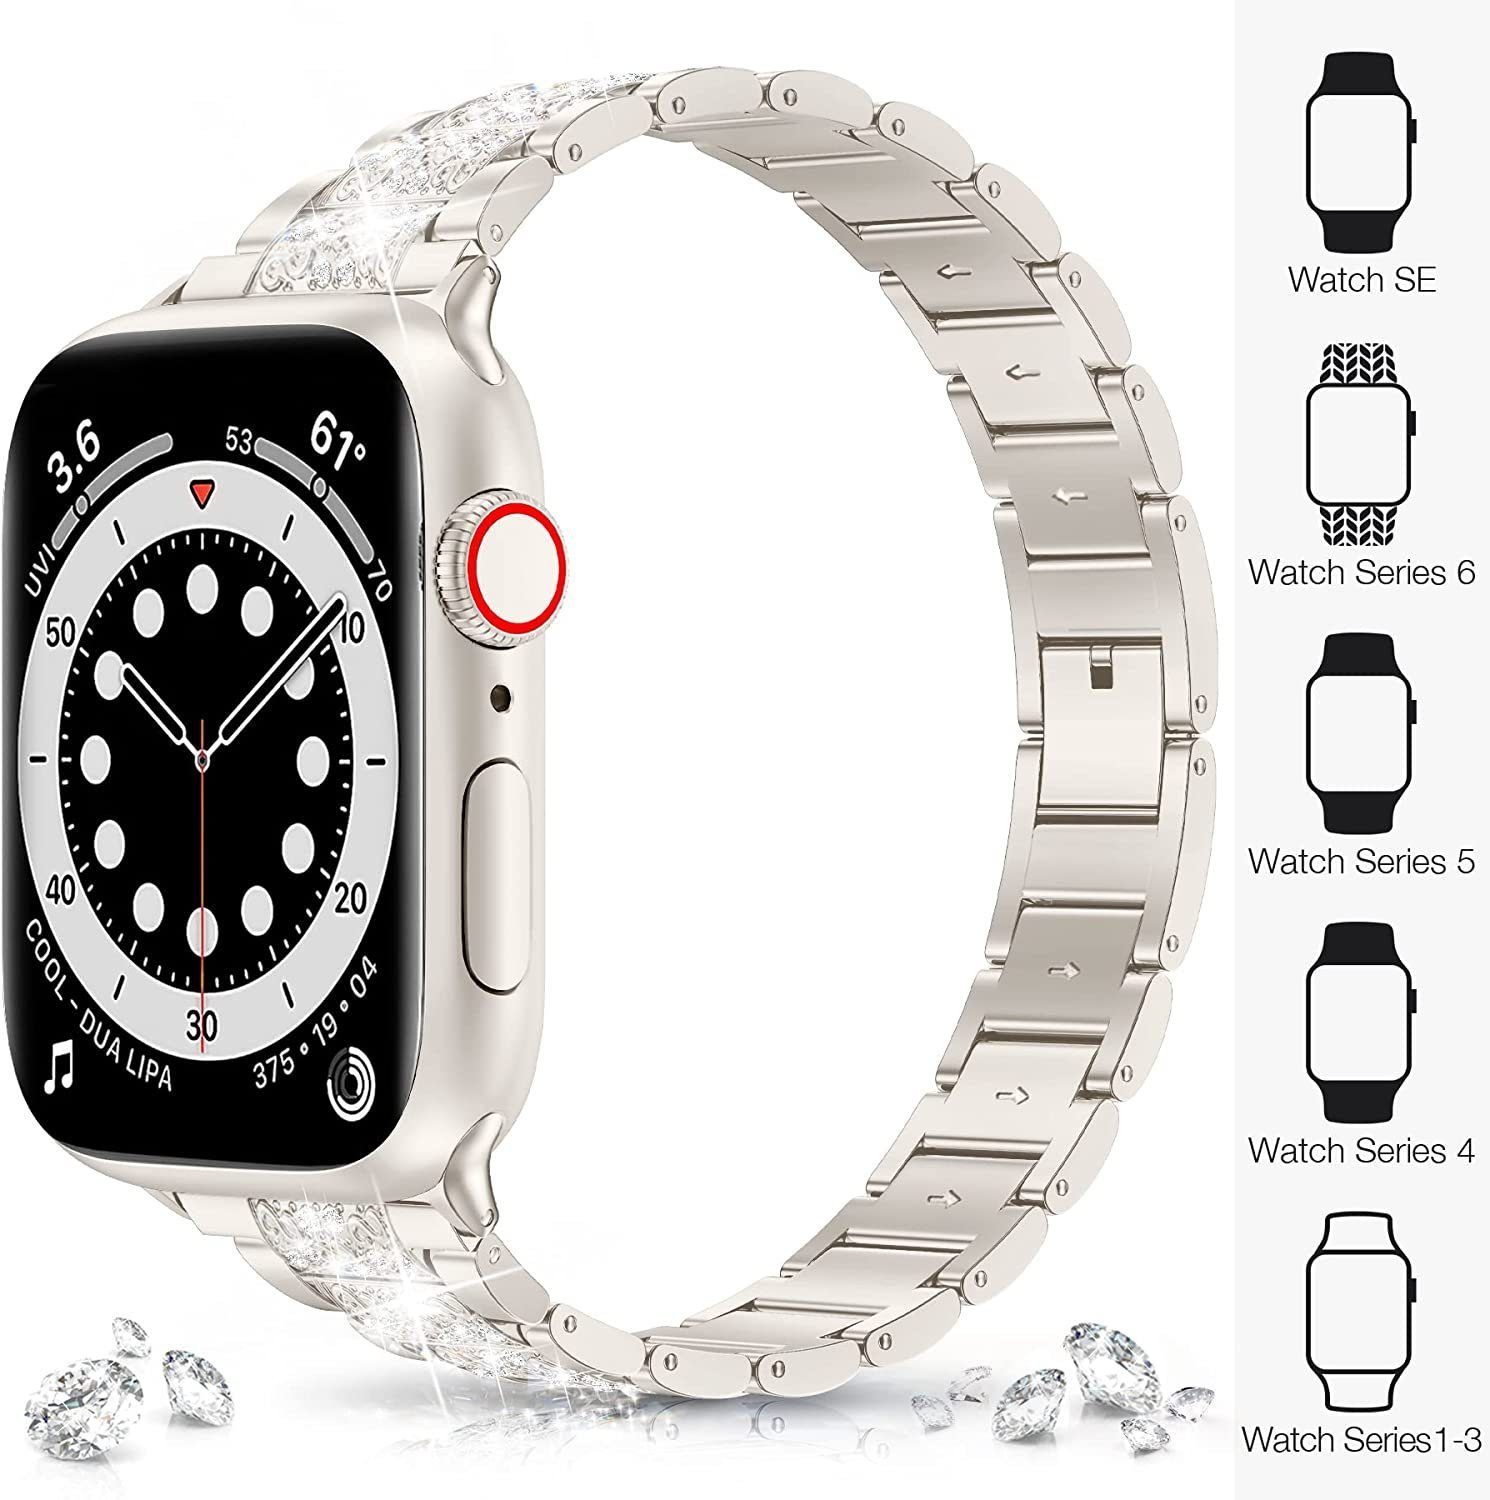 7654321 Serie Smartwatch-Armband mm Für Watch mm-45 Sternenlicht ELEKIN mm,42 Armband,41 Apple mm-38